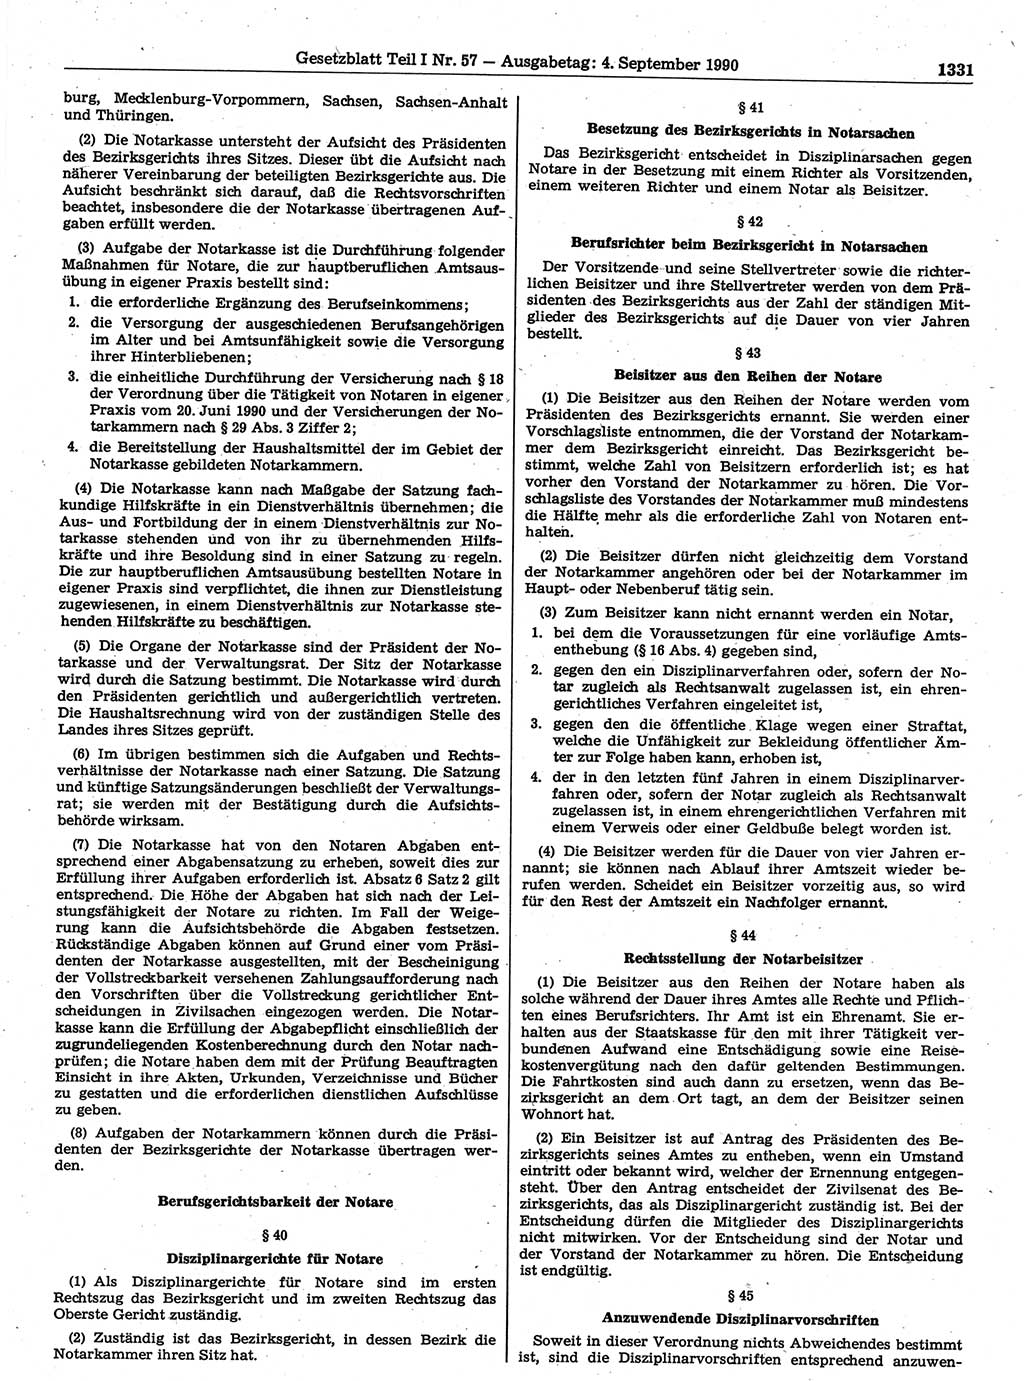 Gesetzblatt (GBl.) der Deutschen Demokratischen Republik (DDR) Teil Ⅰ 1990, Seite 1331 (GBl. DDR Ⅰ 1990, S. 1331)